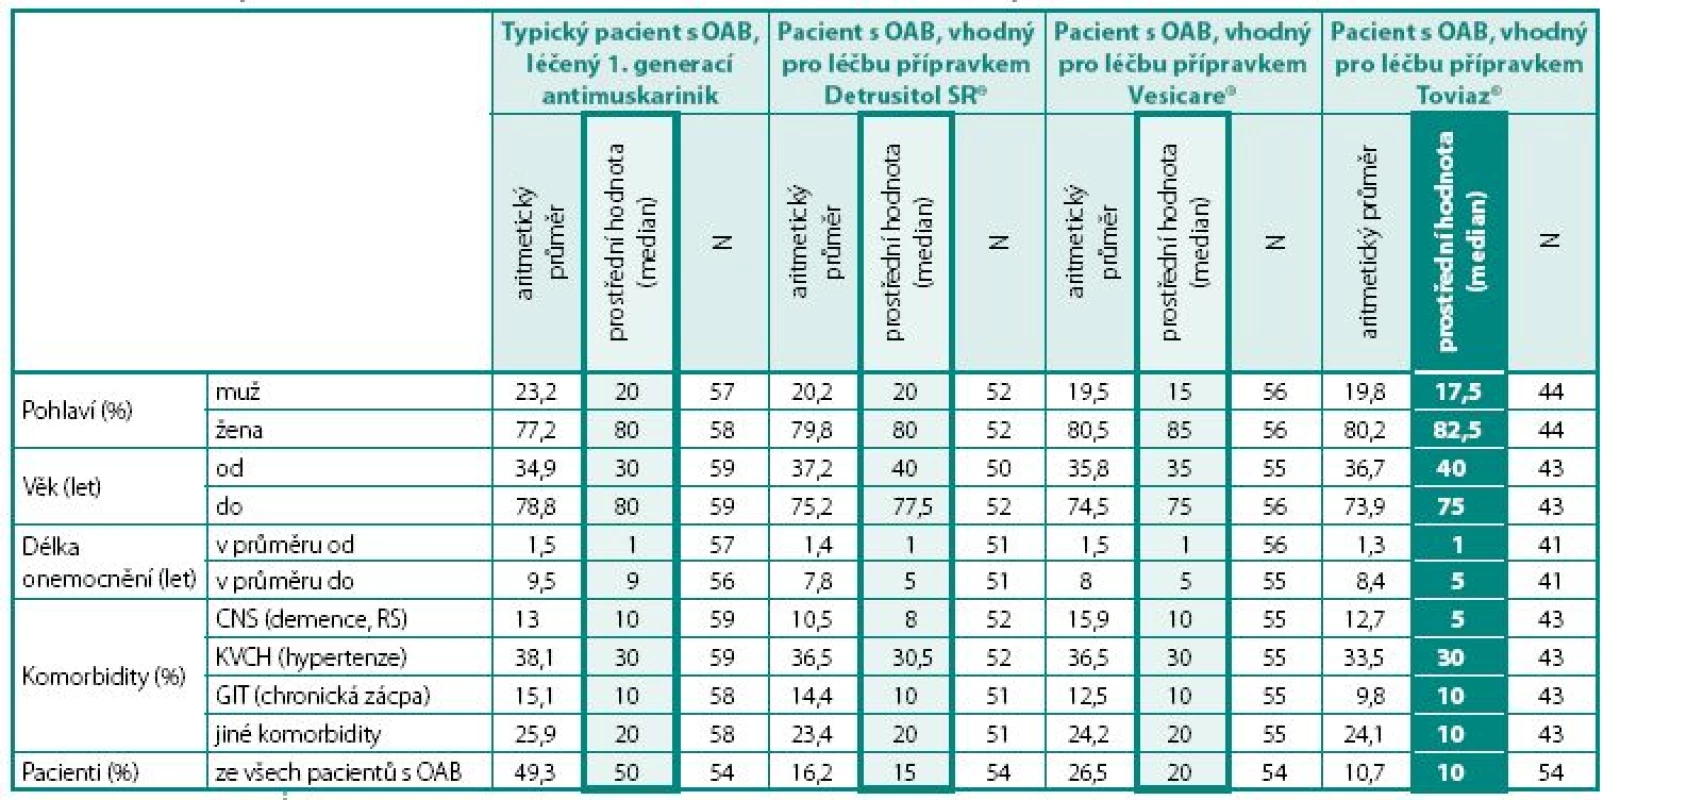 Vztah léčby jednotlivými druhy anticholinergik k různým charakteristikám souboru pacientů
Table 4. Relationship of different antimuscarinic treatment to different characteristics of patients